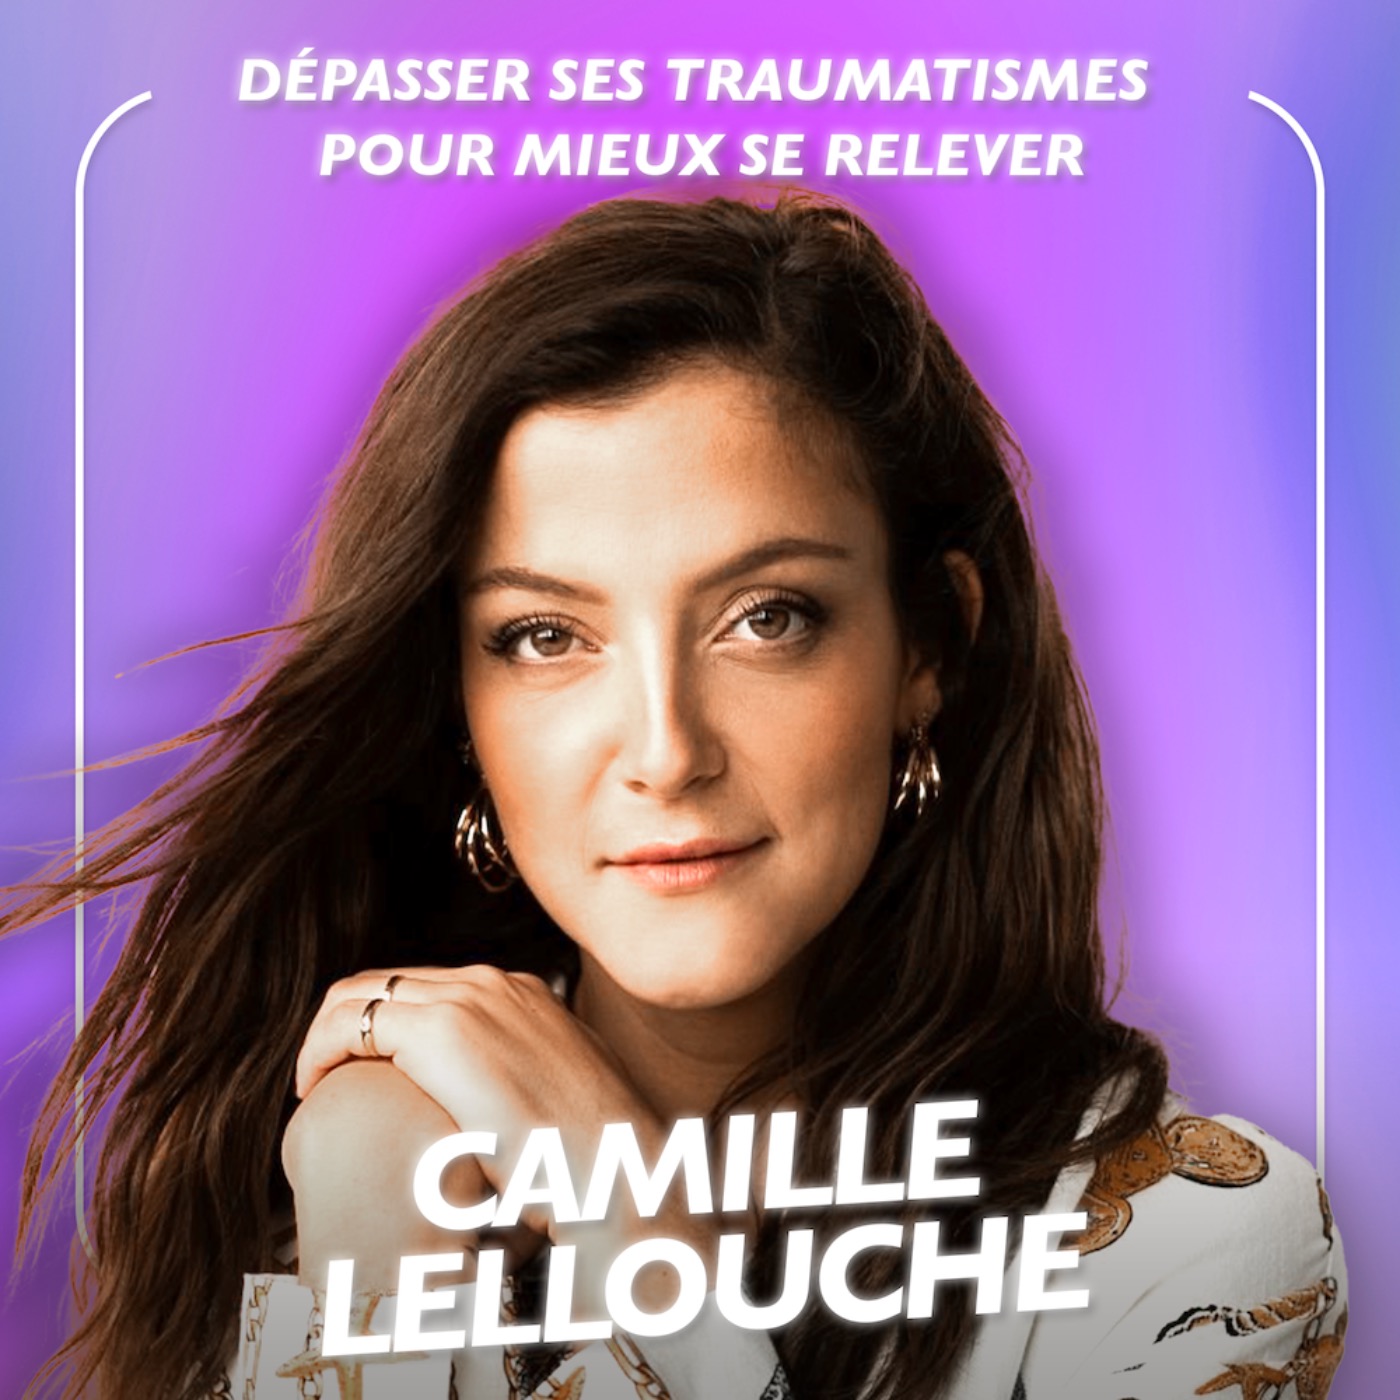 Camille Lellouche, Dépasser ses traumatismes pour mieux se relever